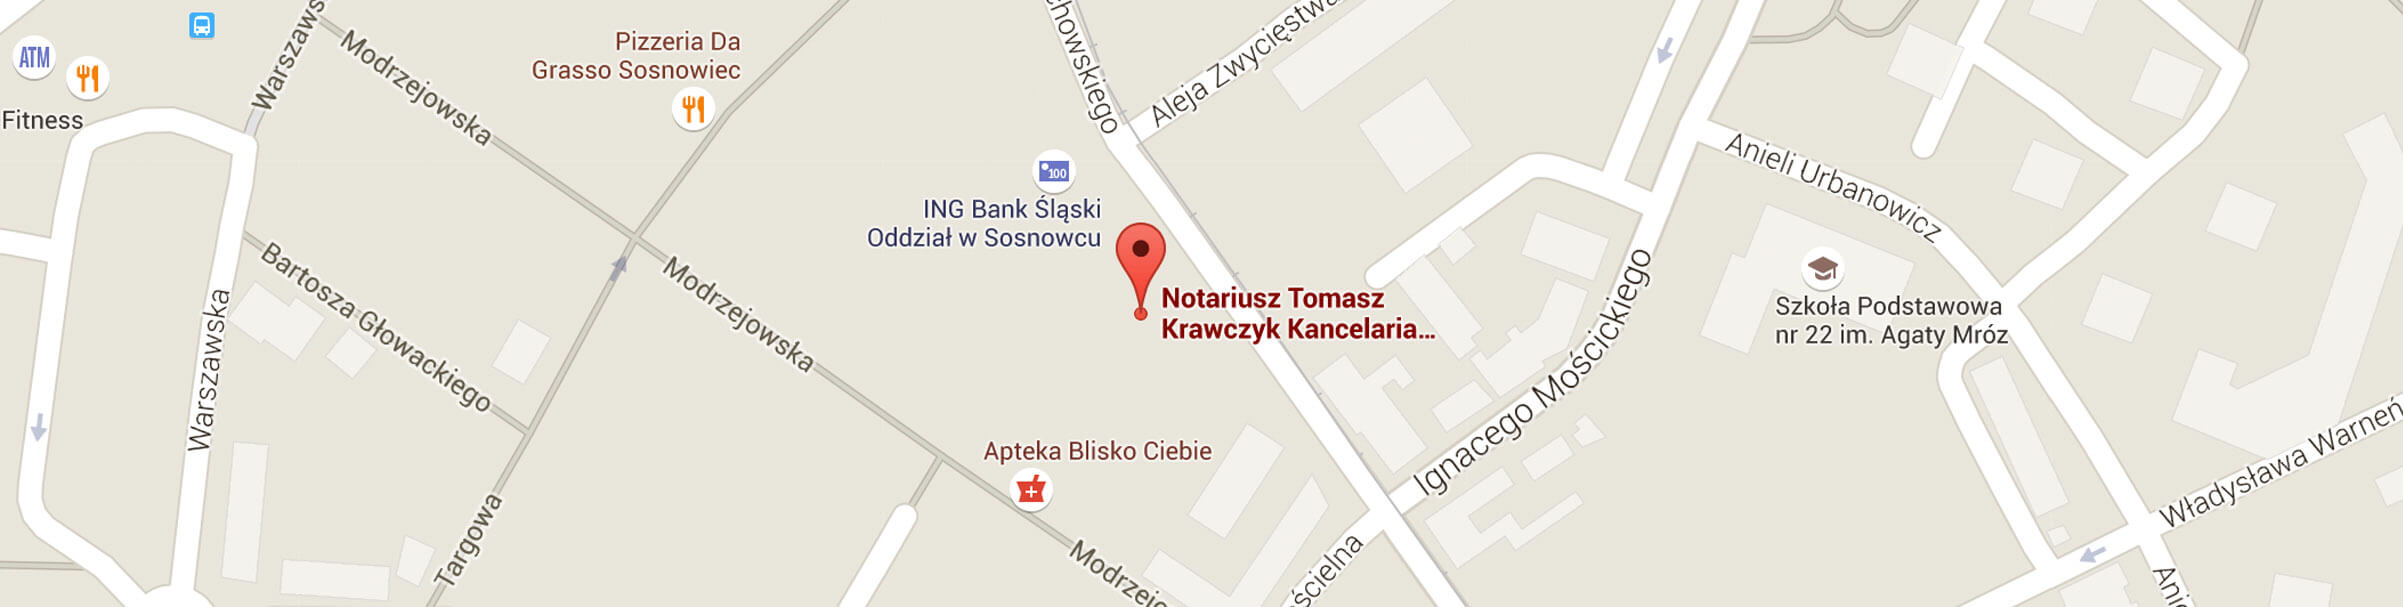 Mapa dojazdu do notariusza w Sosnowcu